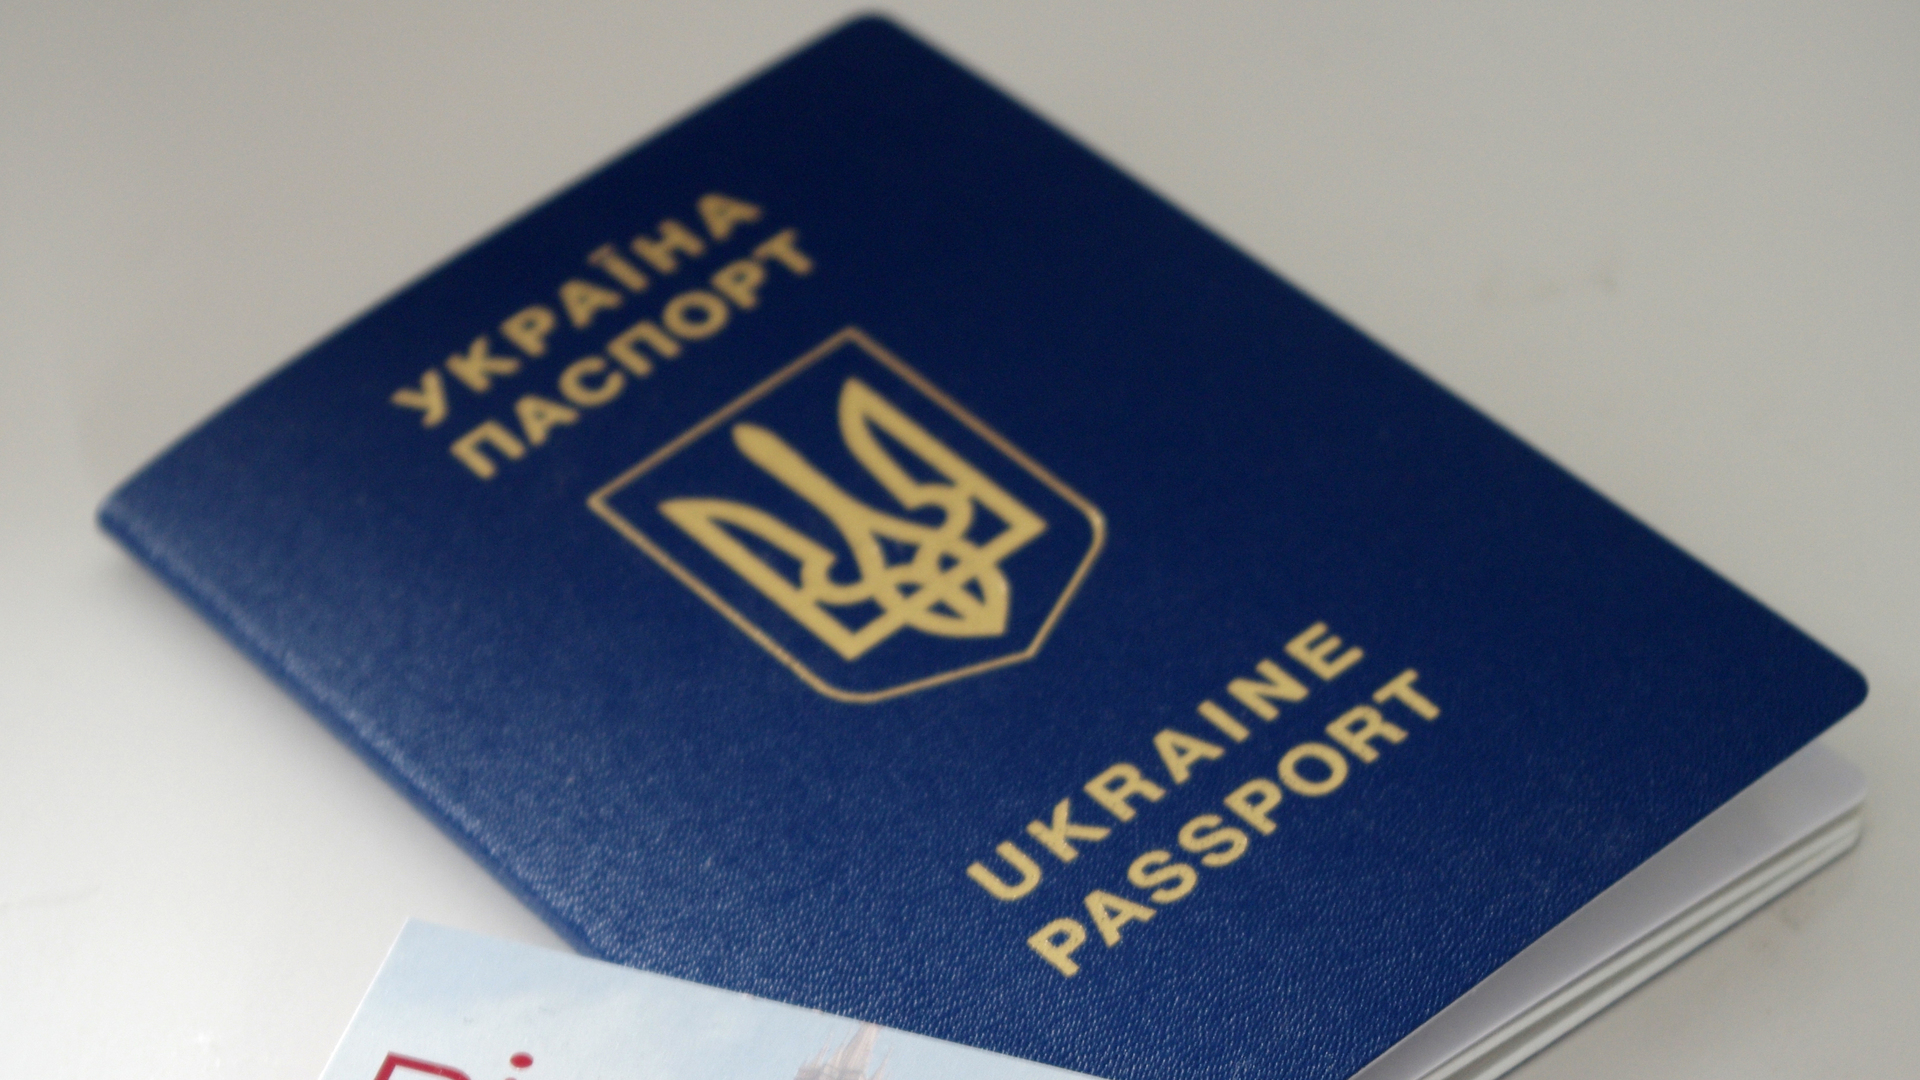 Контроль на выходе: что известно о запрете для украинцев ездить в Россию по внутреннему паспорту